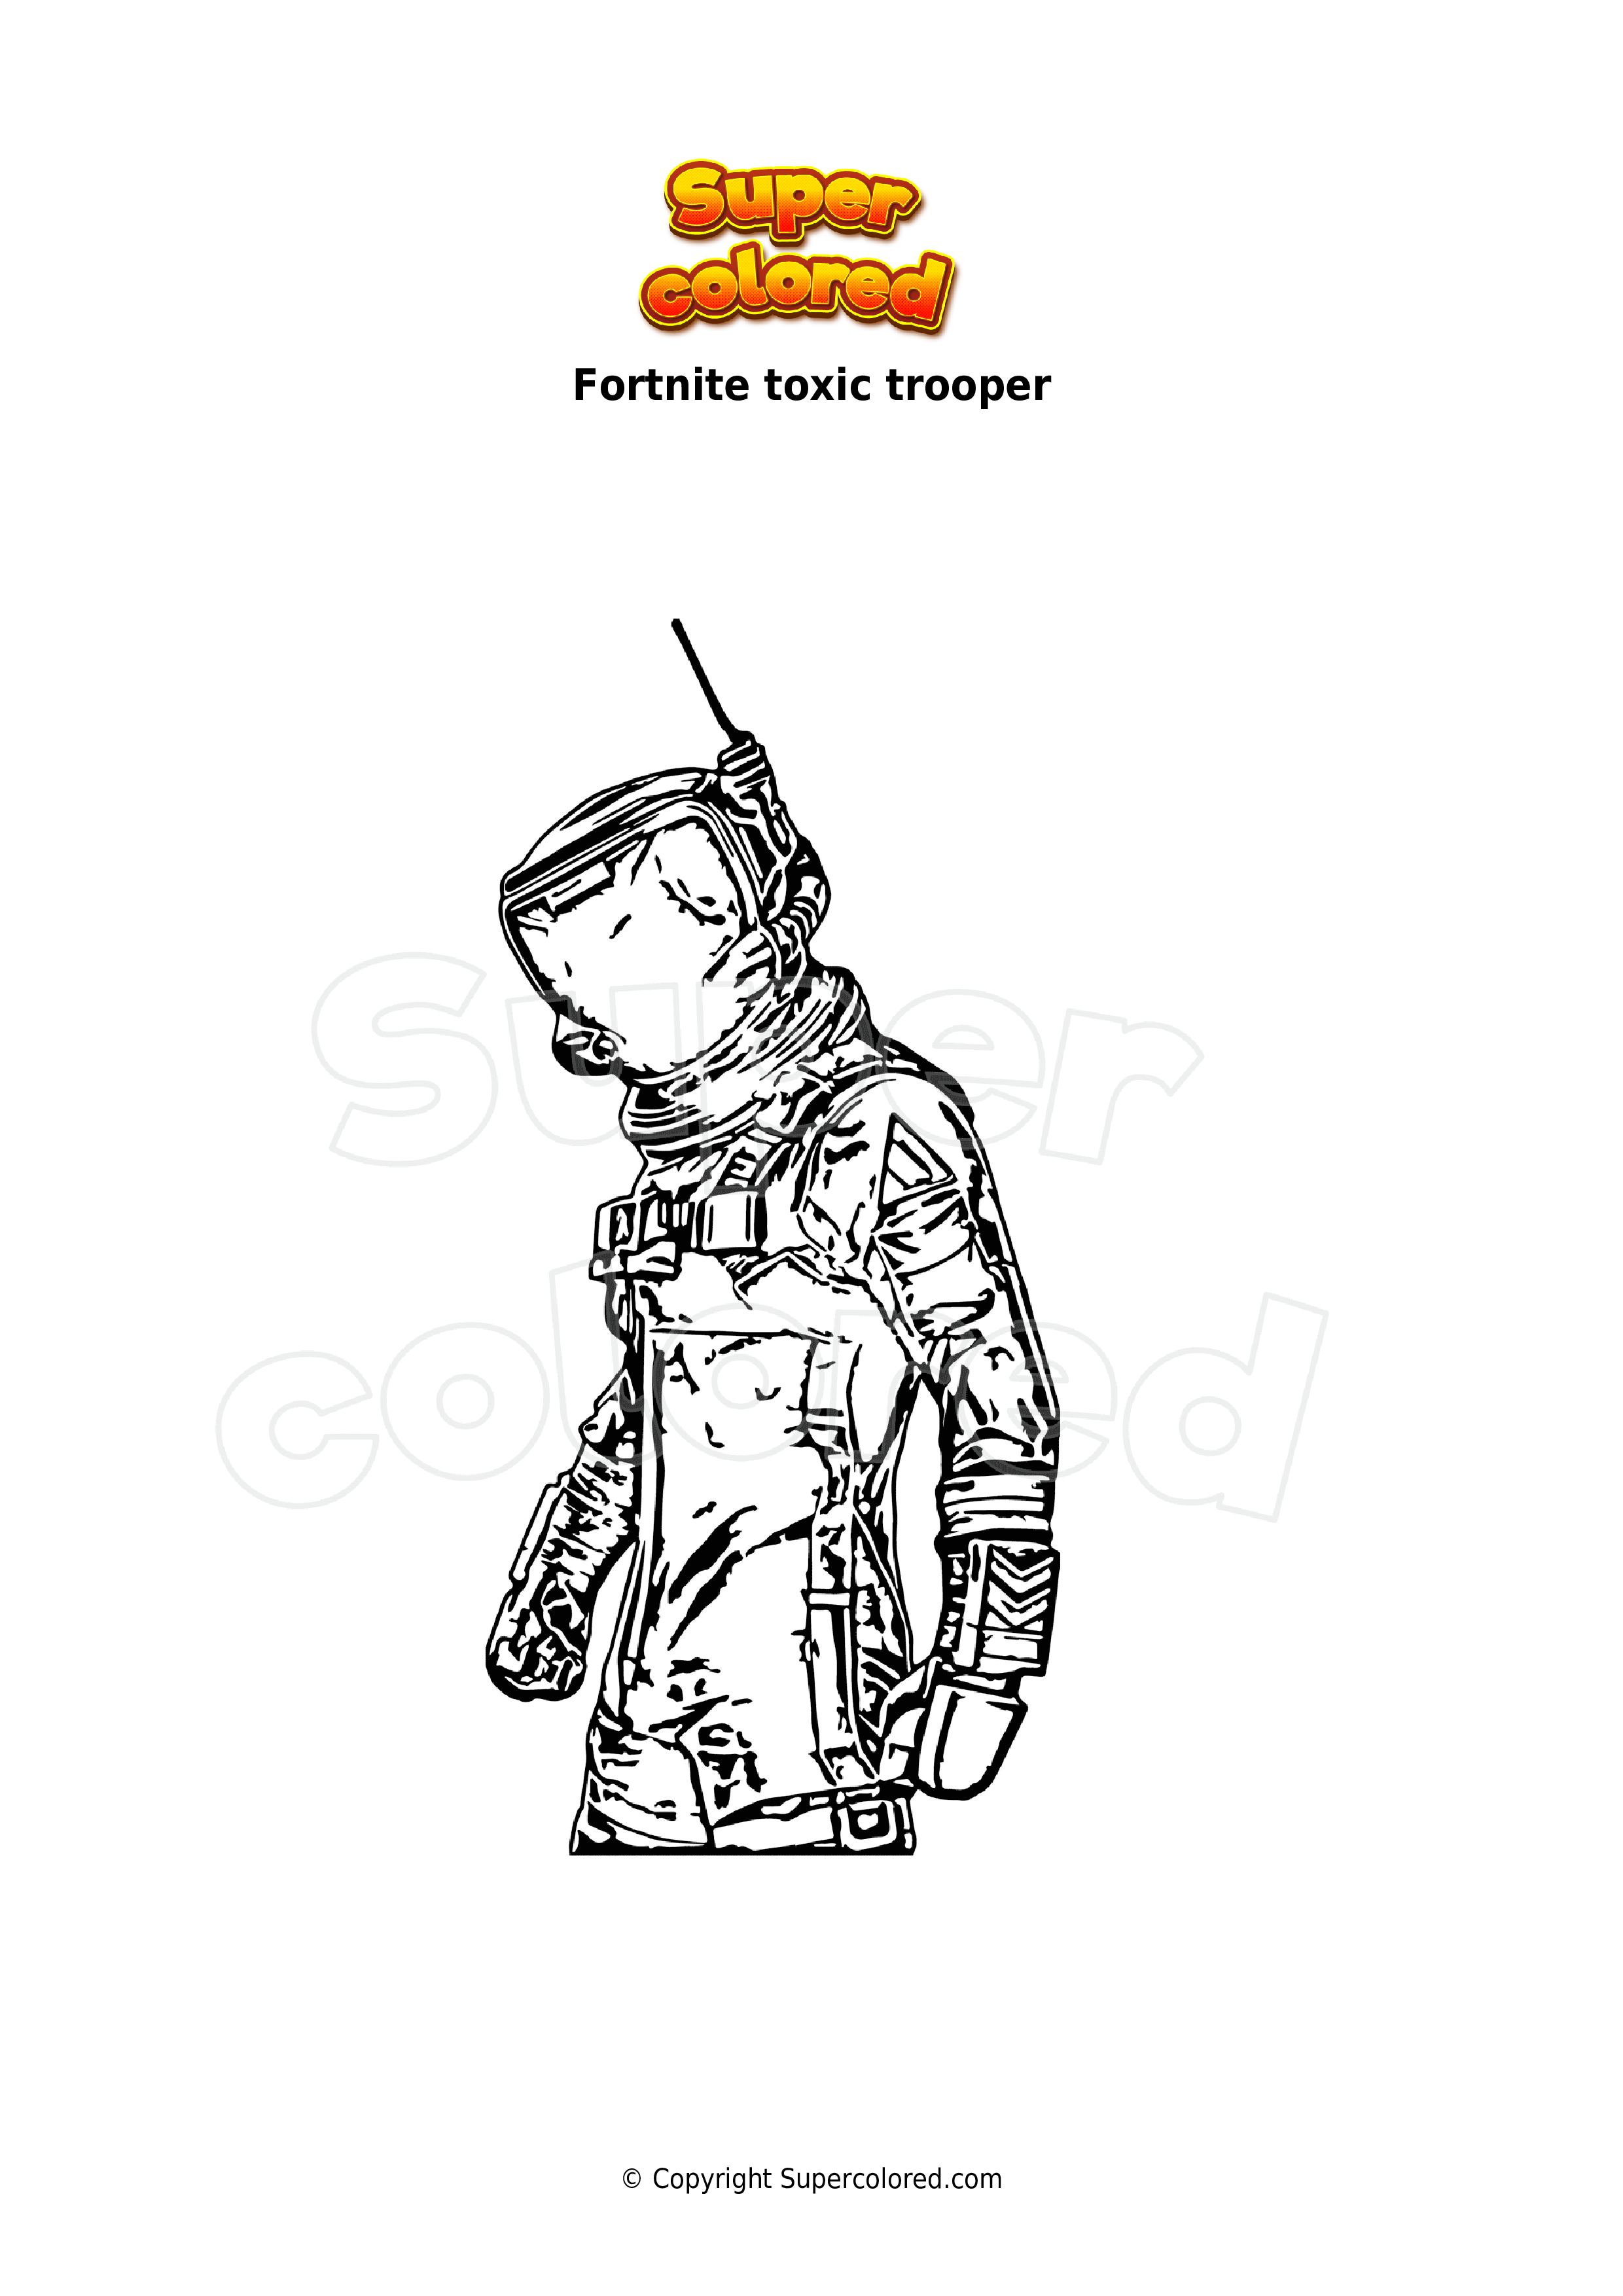 Dibujo para colorear Fortnite toxic trooper - Supercolored.com